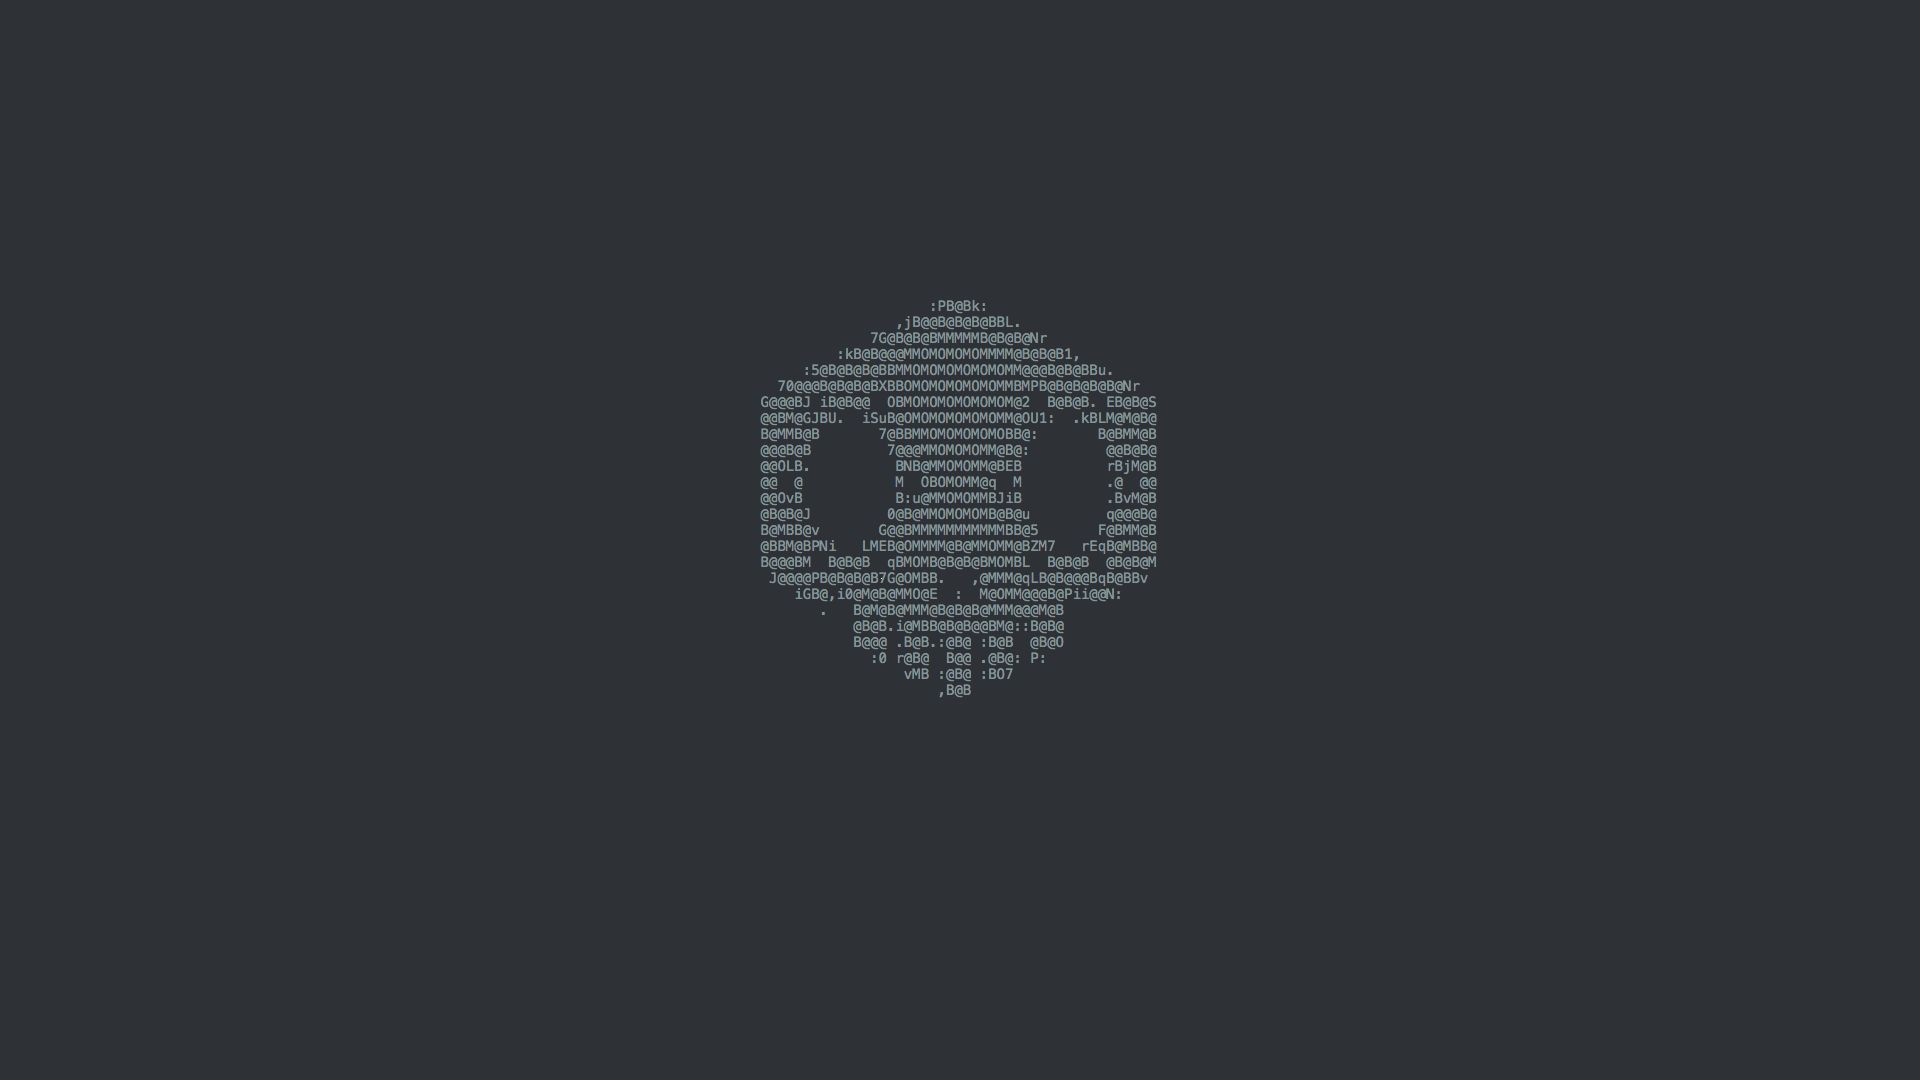 Hd desktop skull overwatch video game minimalist sombra overwatch download free picture